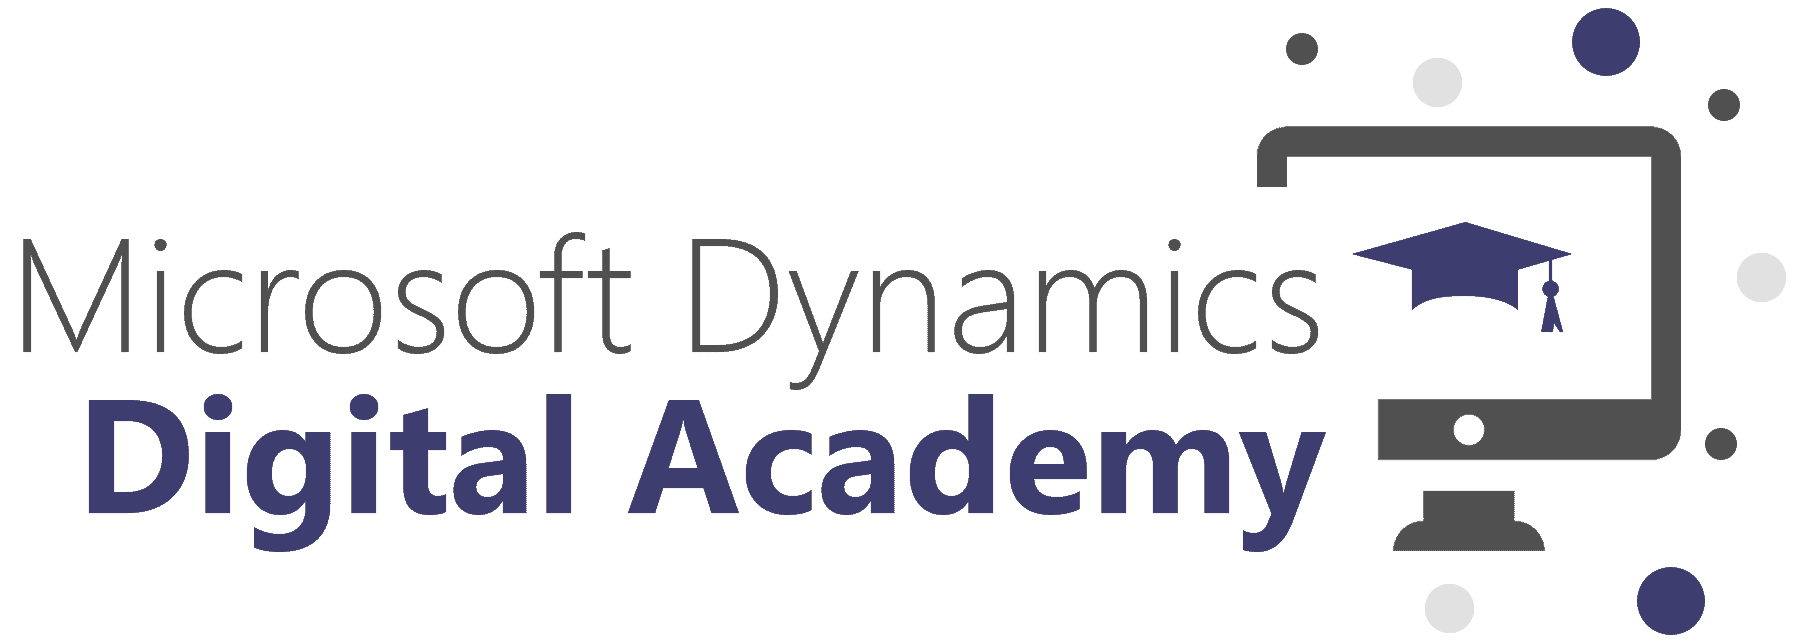 Microsoft Dynamics Digital Academy